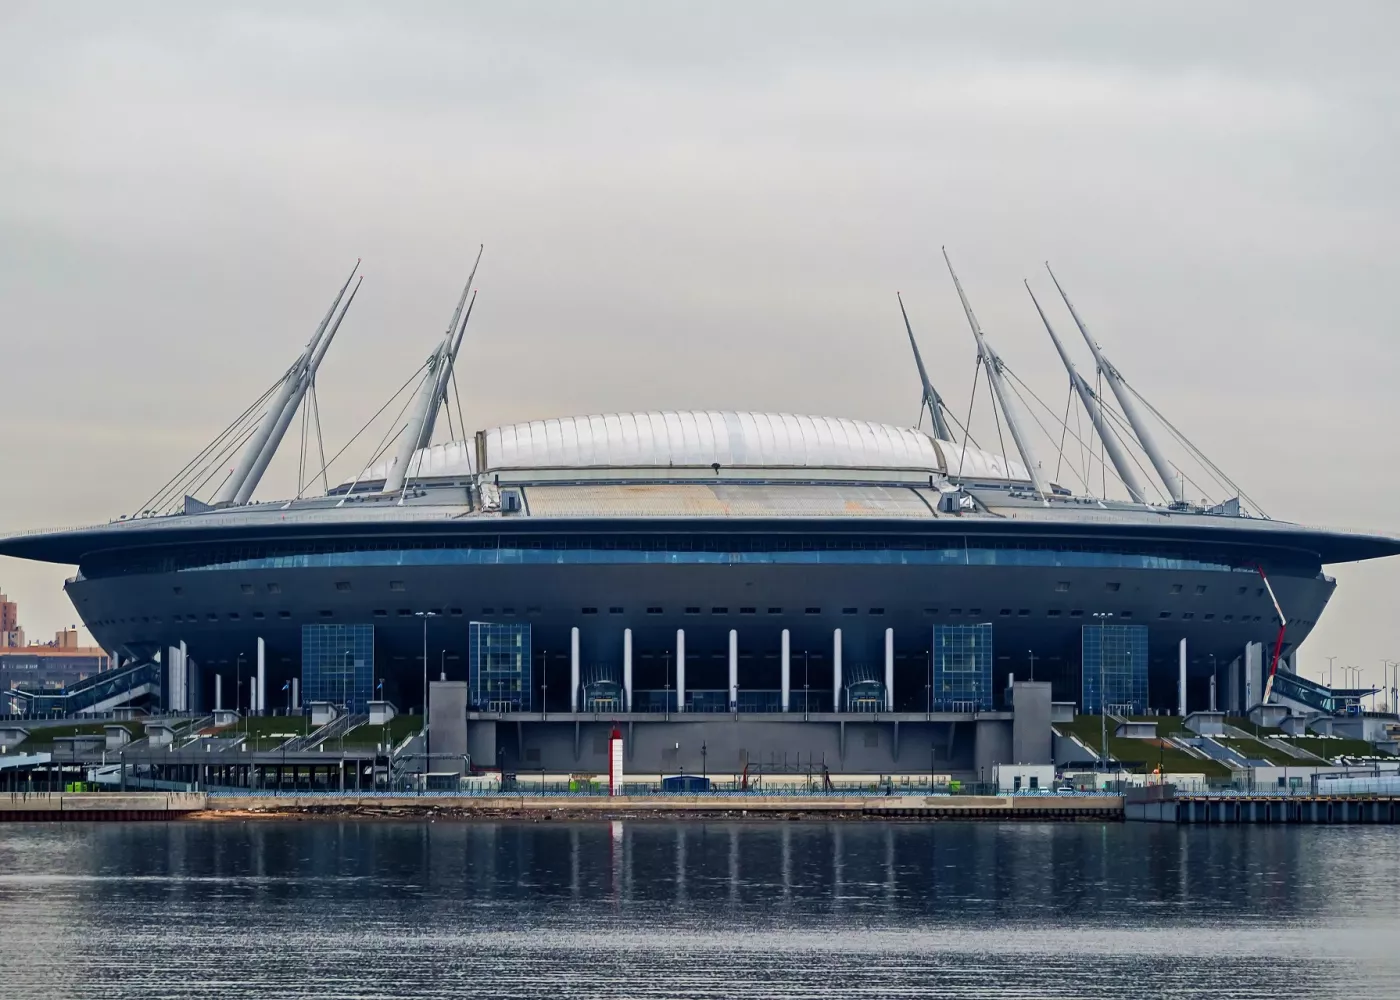 Экскурсия на стадион «Санкт-Петербург» ⚽ (Газпром Арена): расписание, ₽ цены, купить билеты онлайн